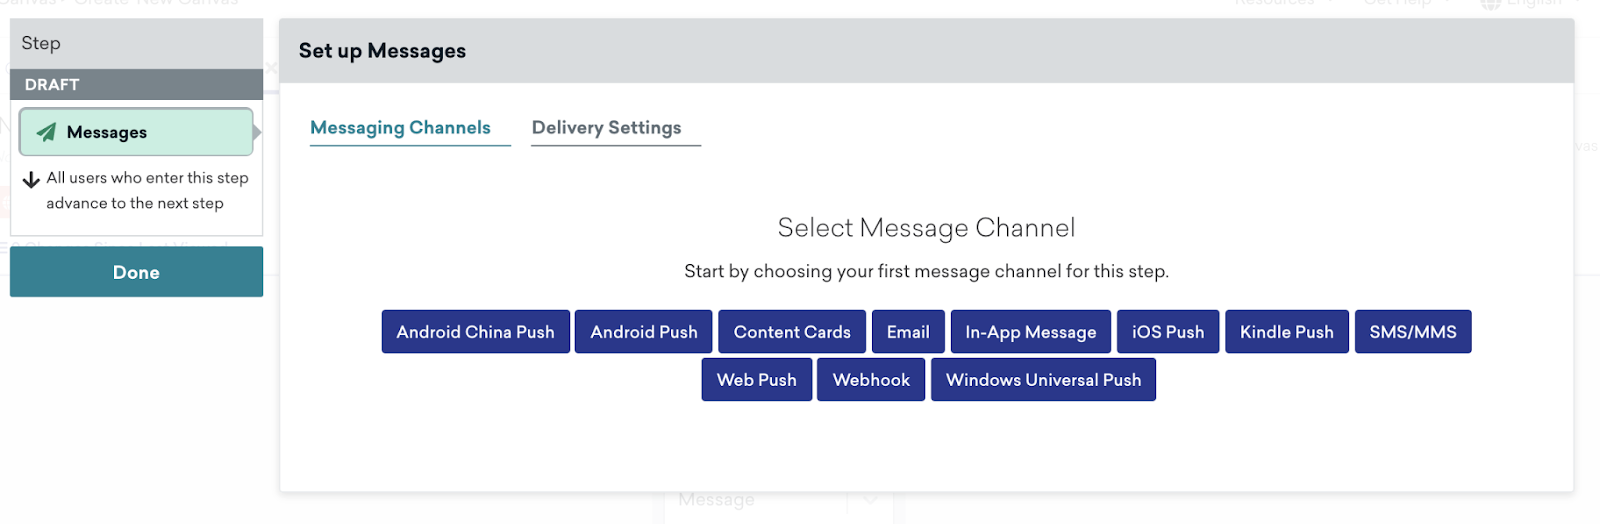 メッセージチャネルを選択して配信設定をカスタマイズするオプションを含む、キャンバスメッセージコンポーネントのメッセージ設定。